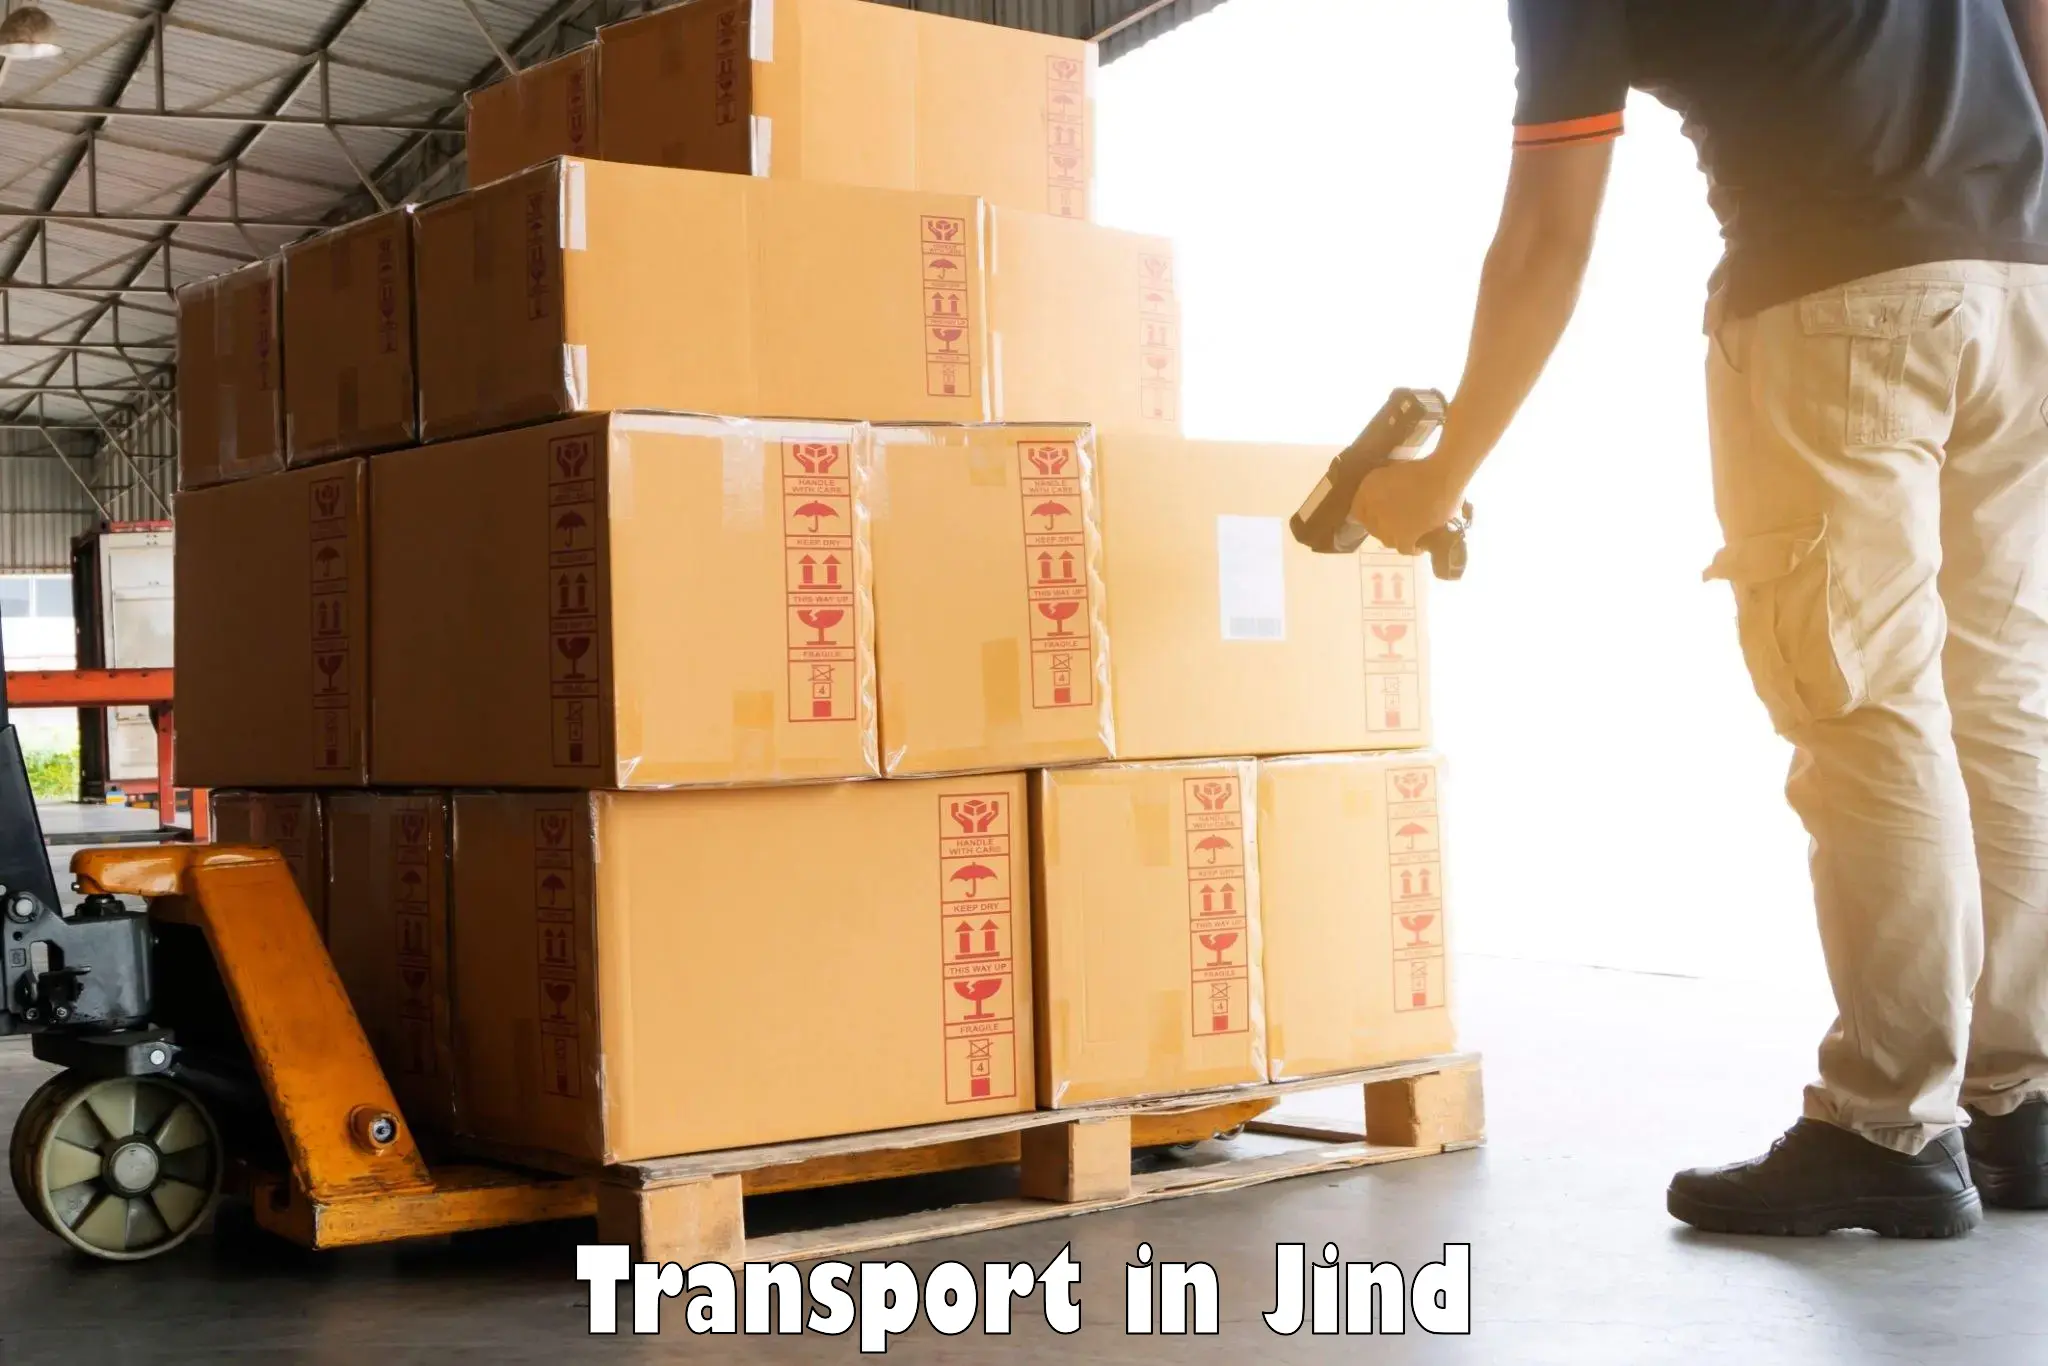 Door to door transport services in Jind